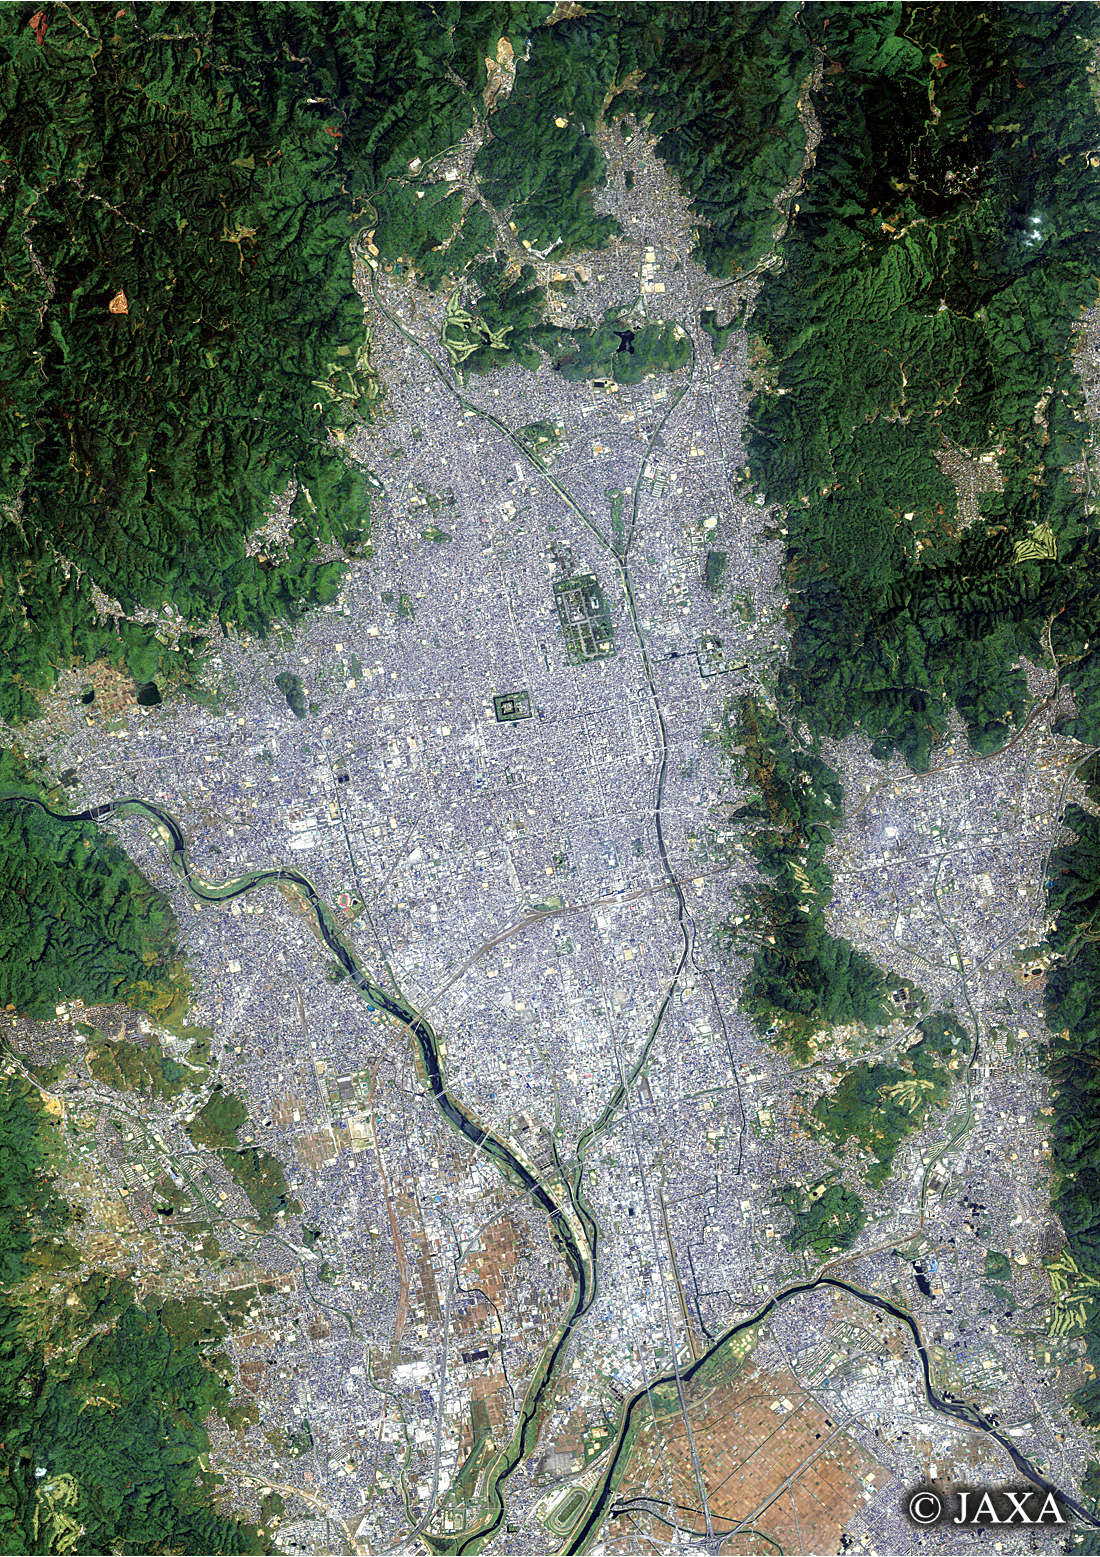 だいちから見た日本の都市 京都:衛星画像